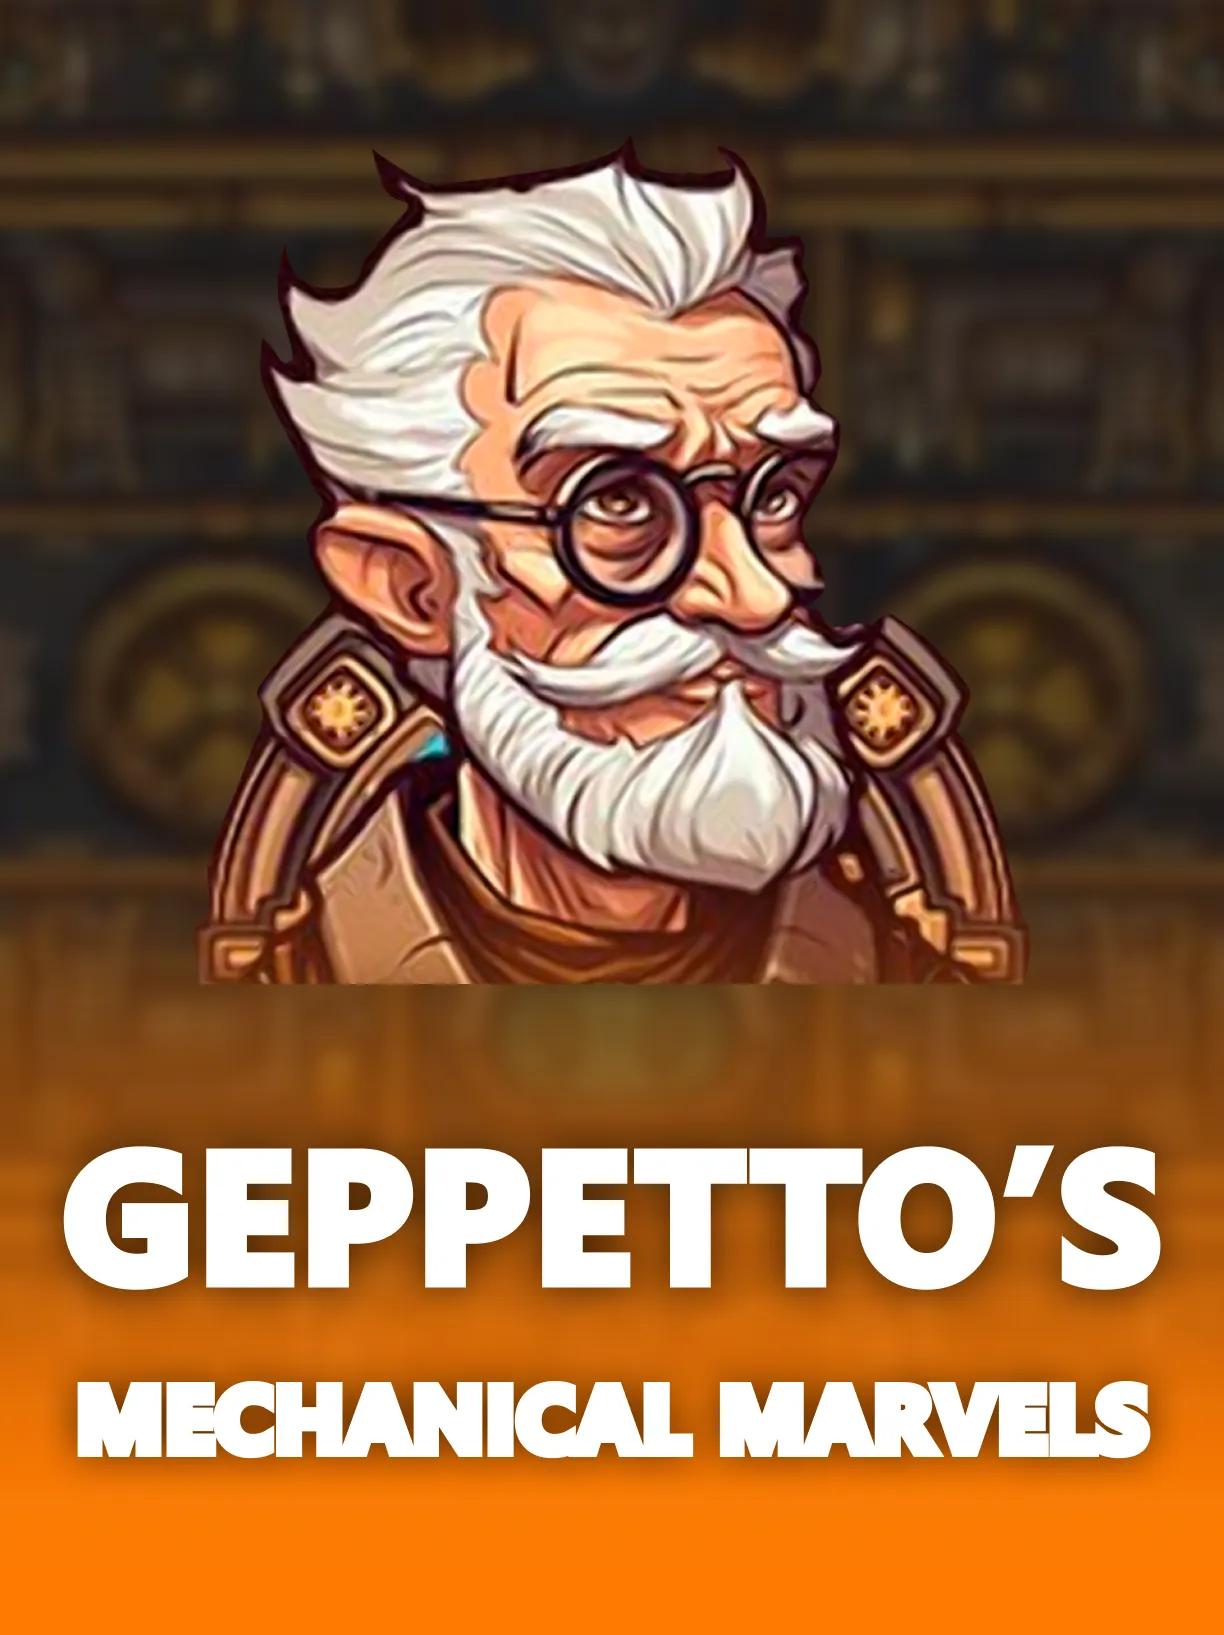 ug_Geppettos_Mechanical_Marvels_square.webp